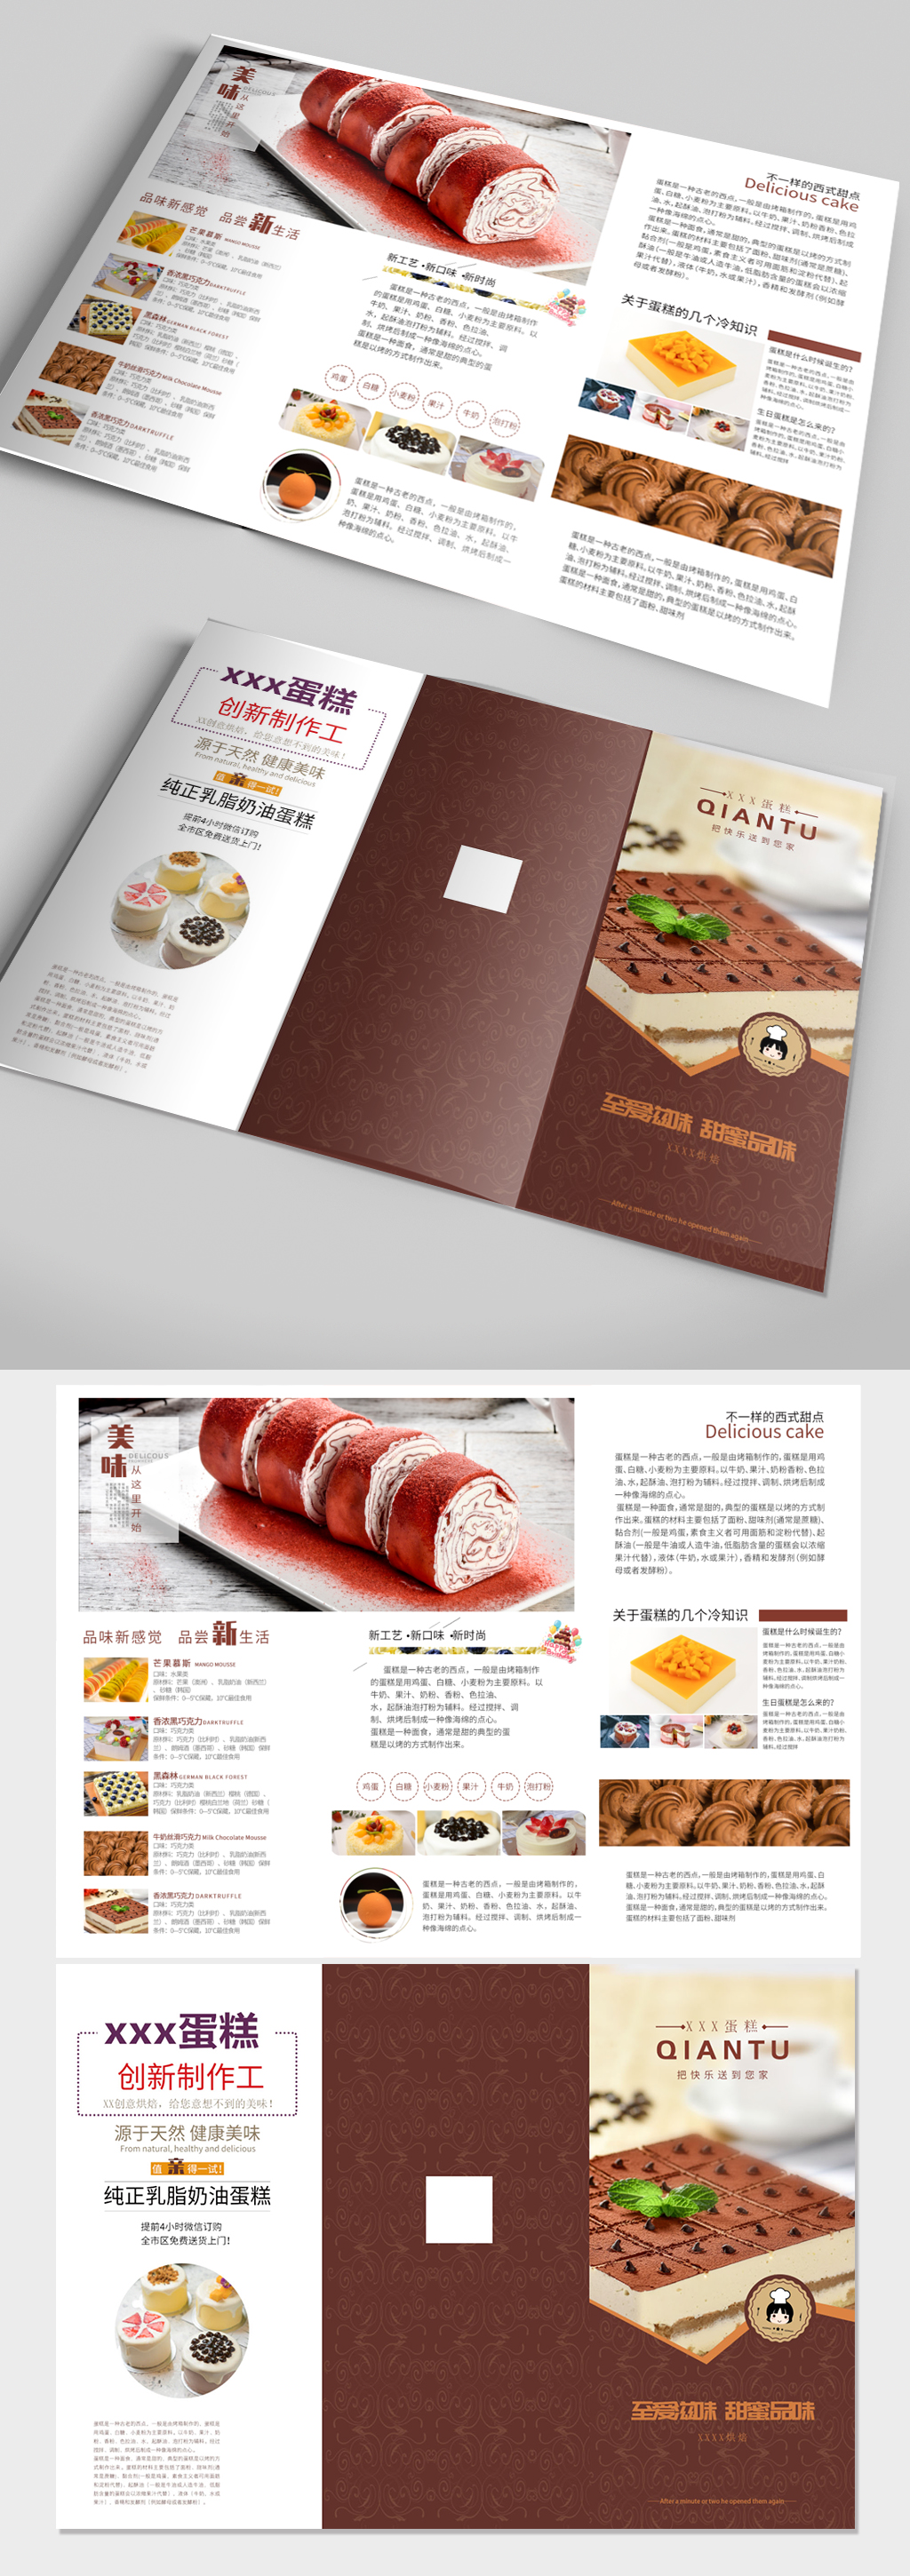 大气蛋糕店烘焙馆宣传手册 三折页